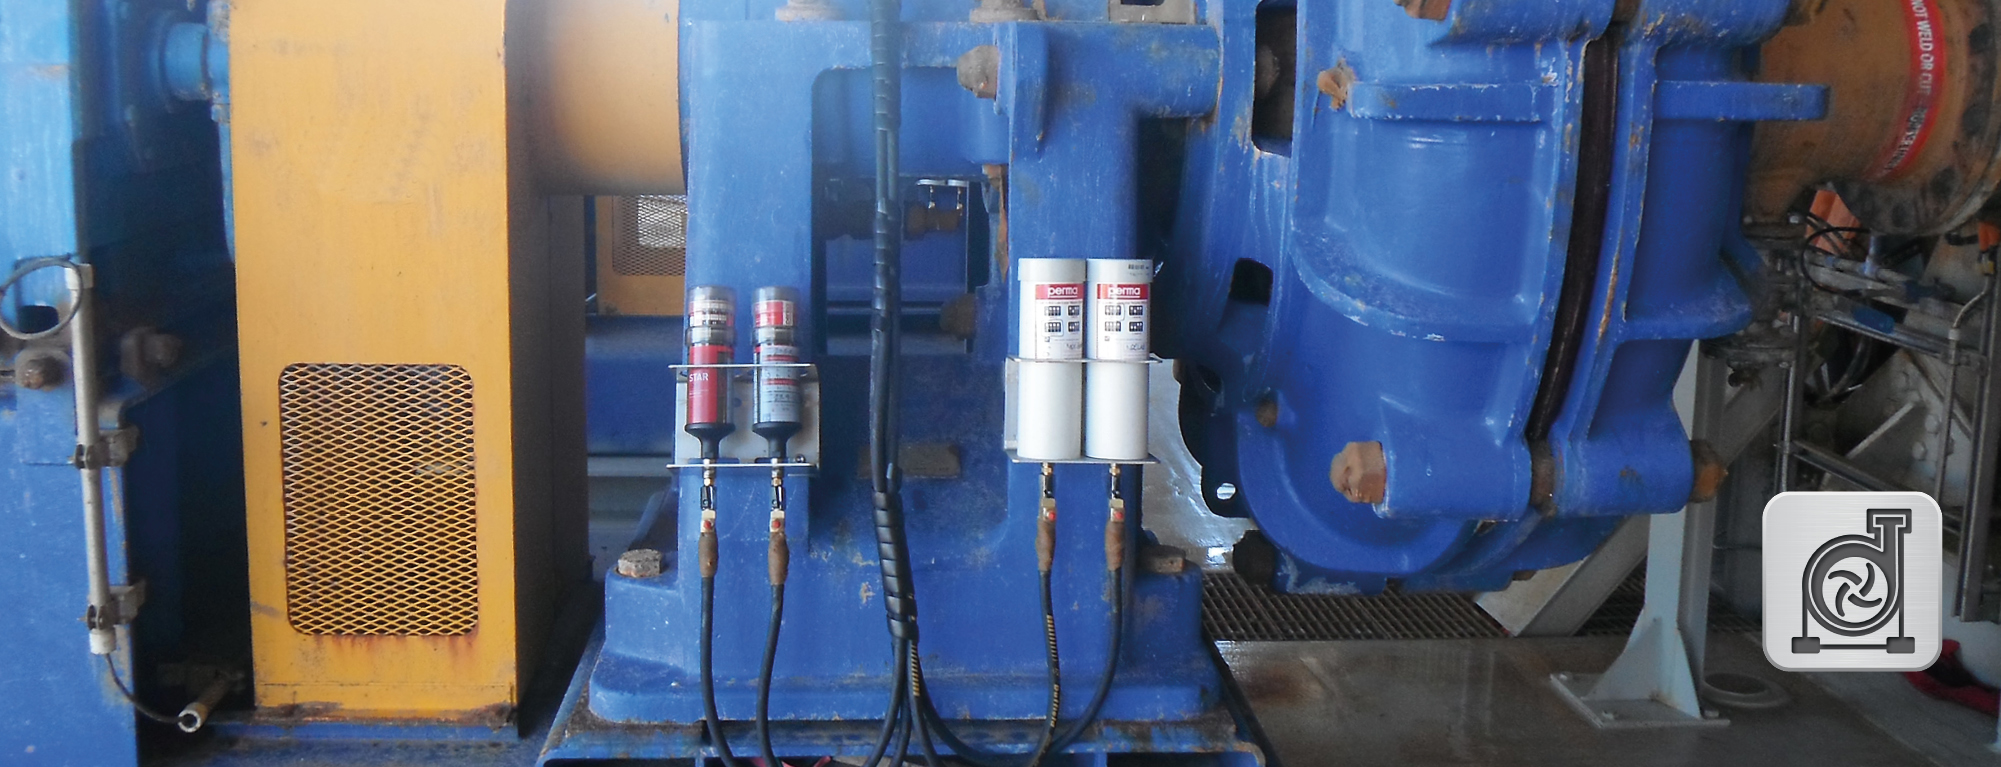 Perma lubricadores automaticos mantenimiento preventivo en bombas